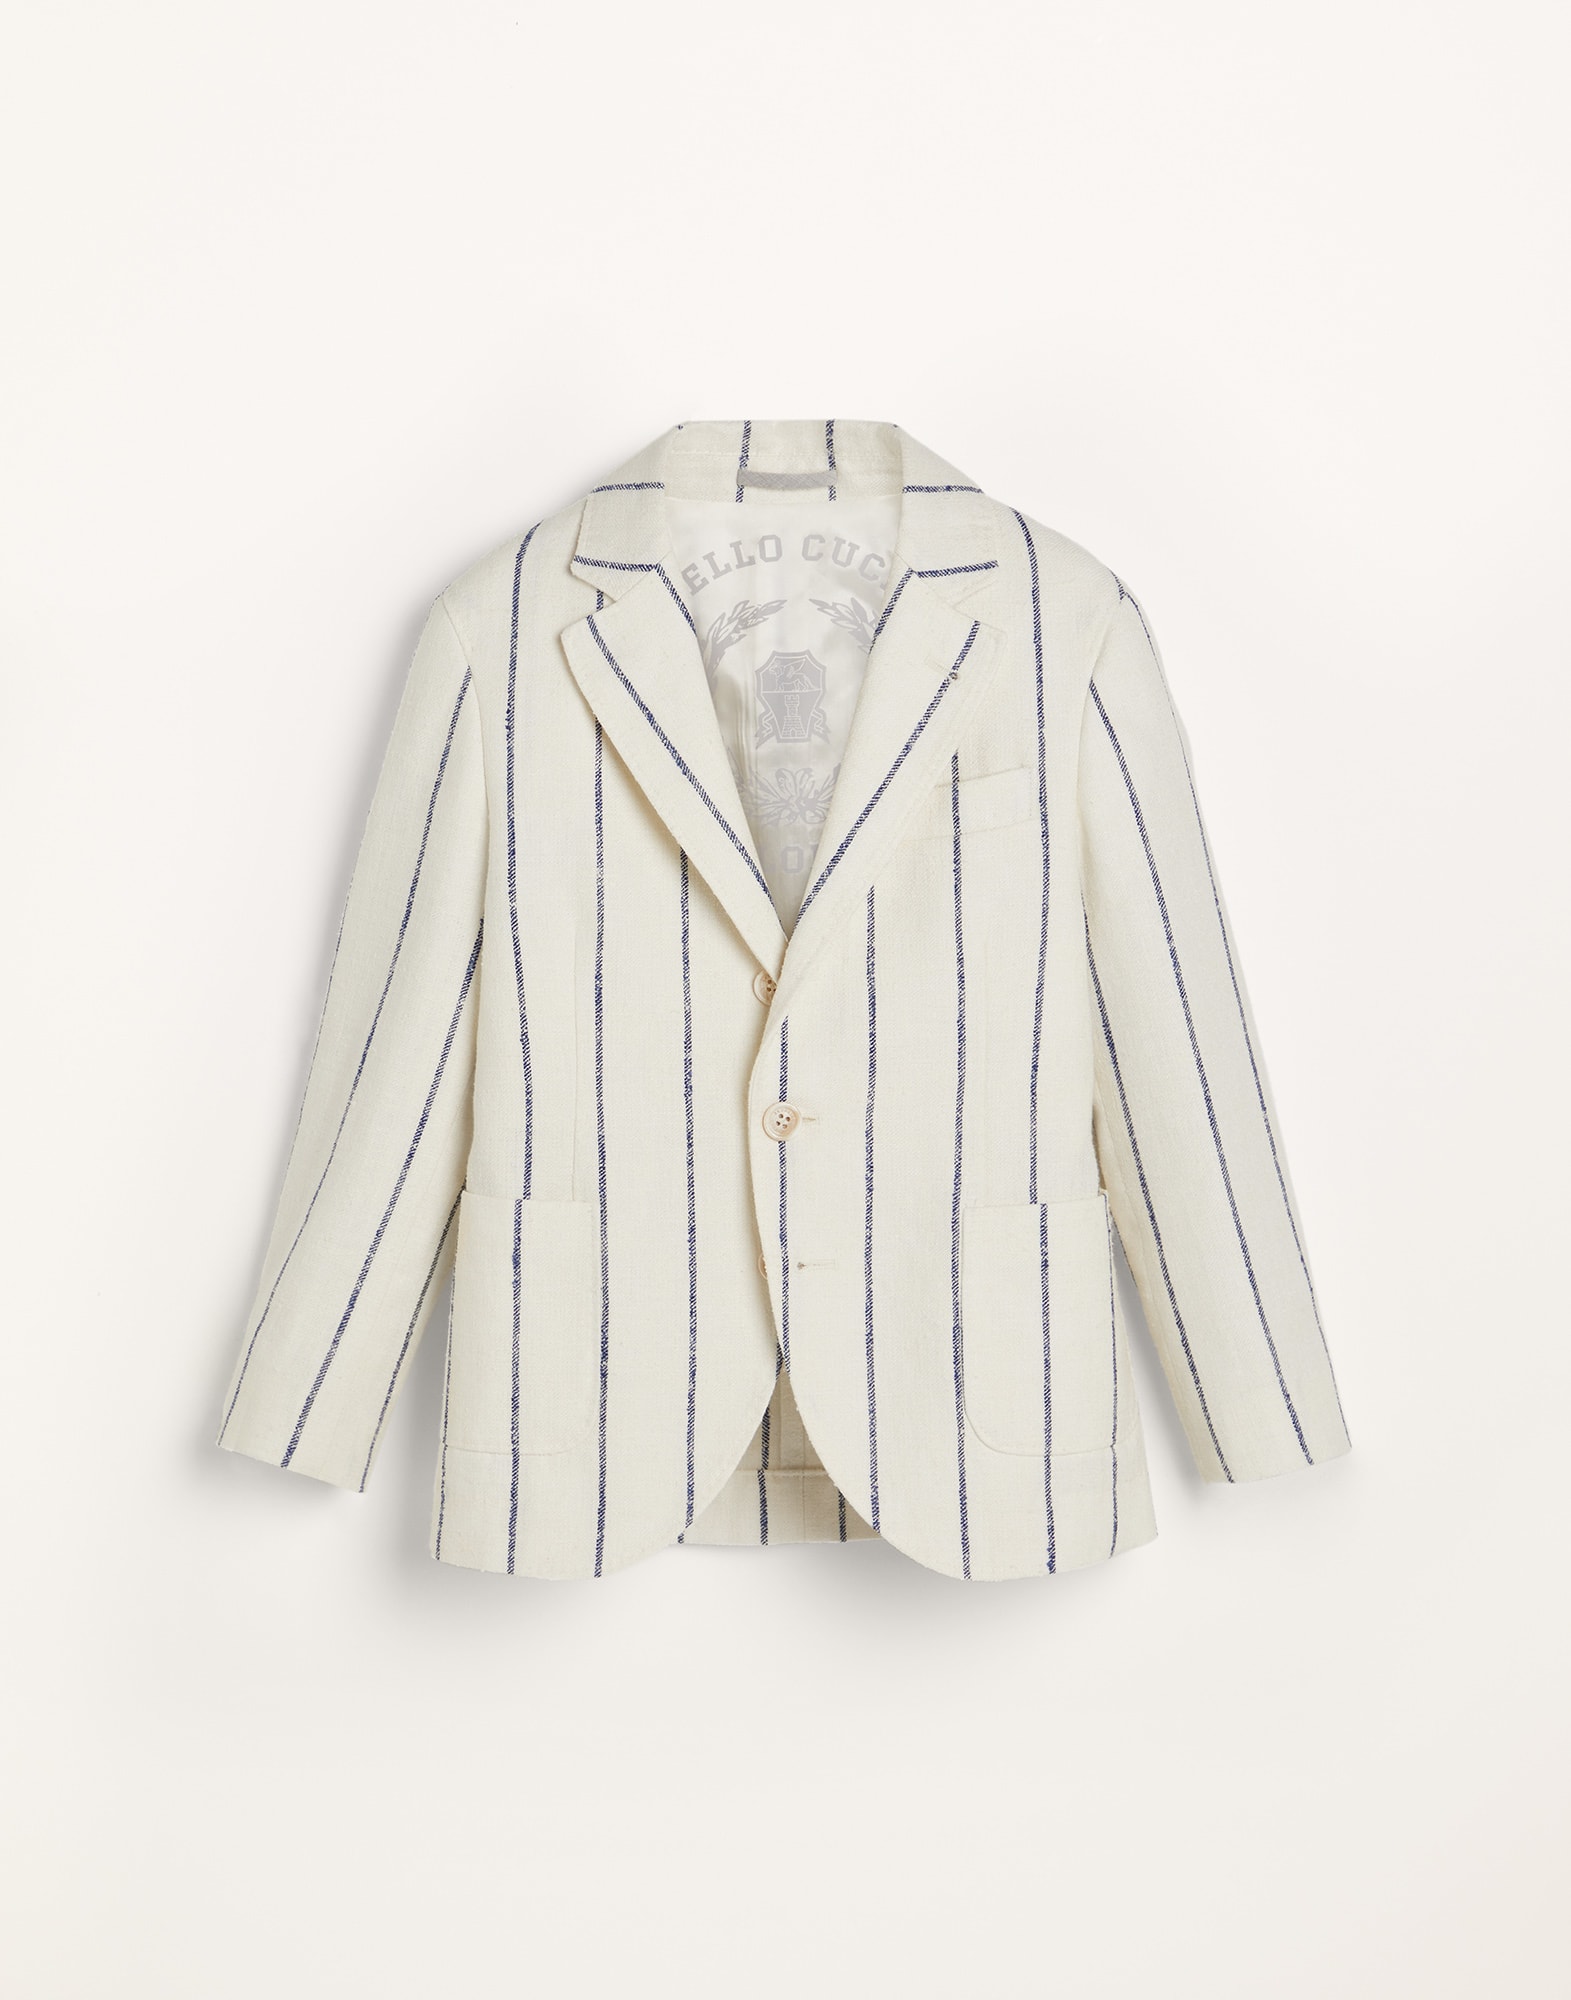 Пиджак из льна, шерсти и шелка Белый Мальчики - Brunello Cucinelli